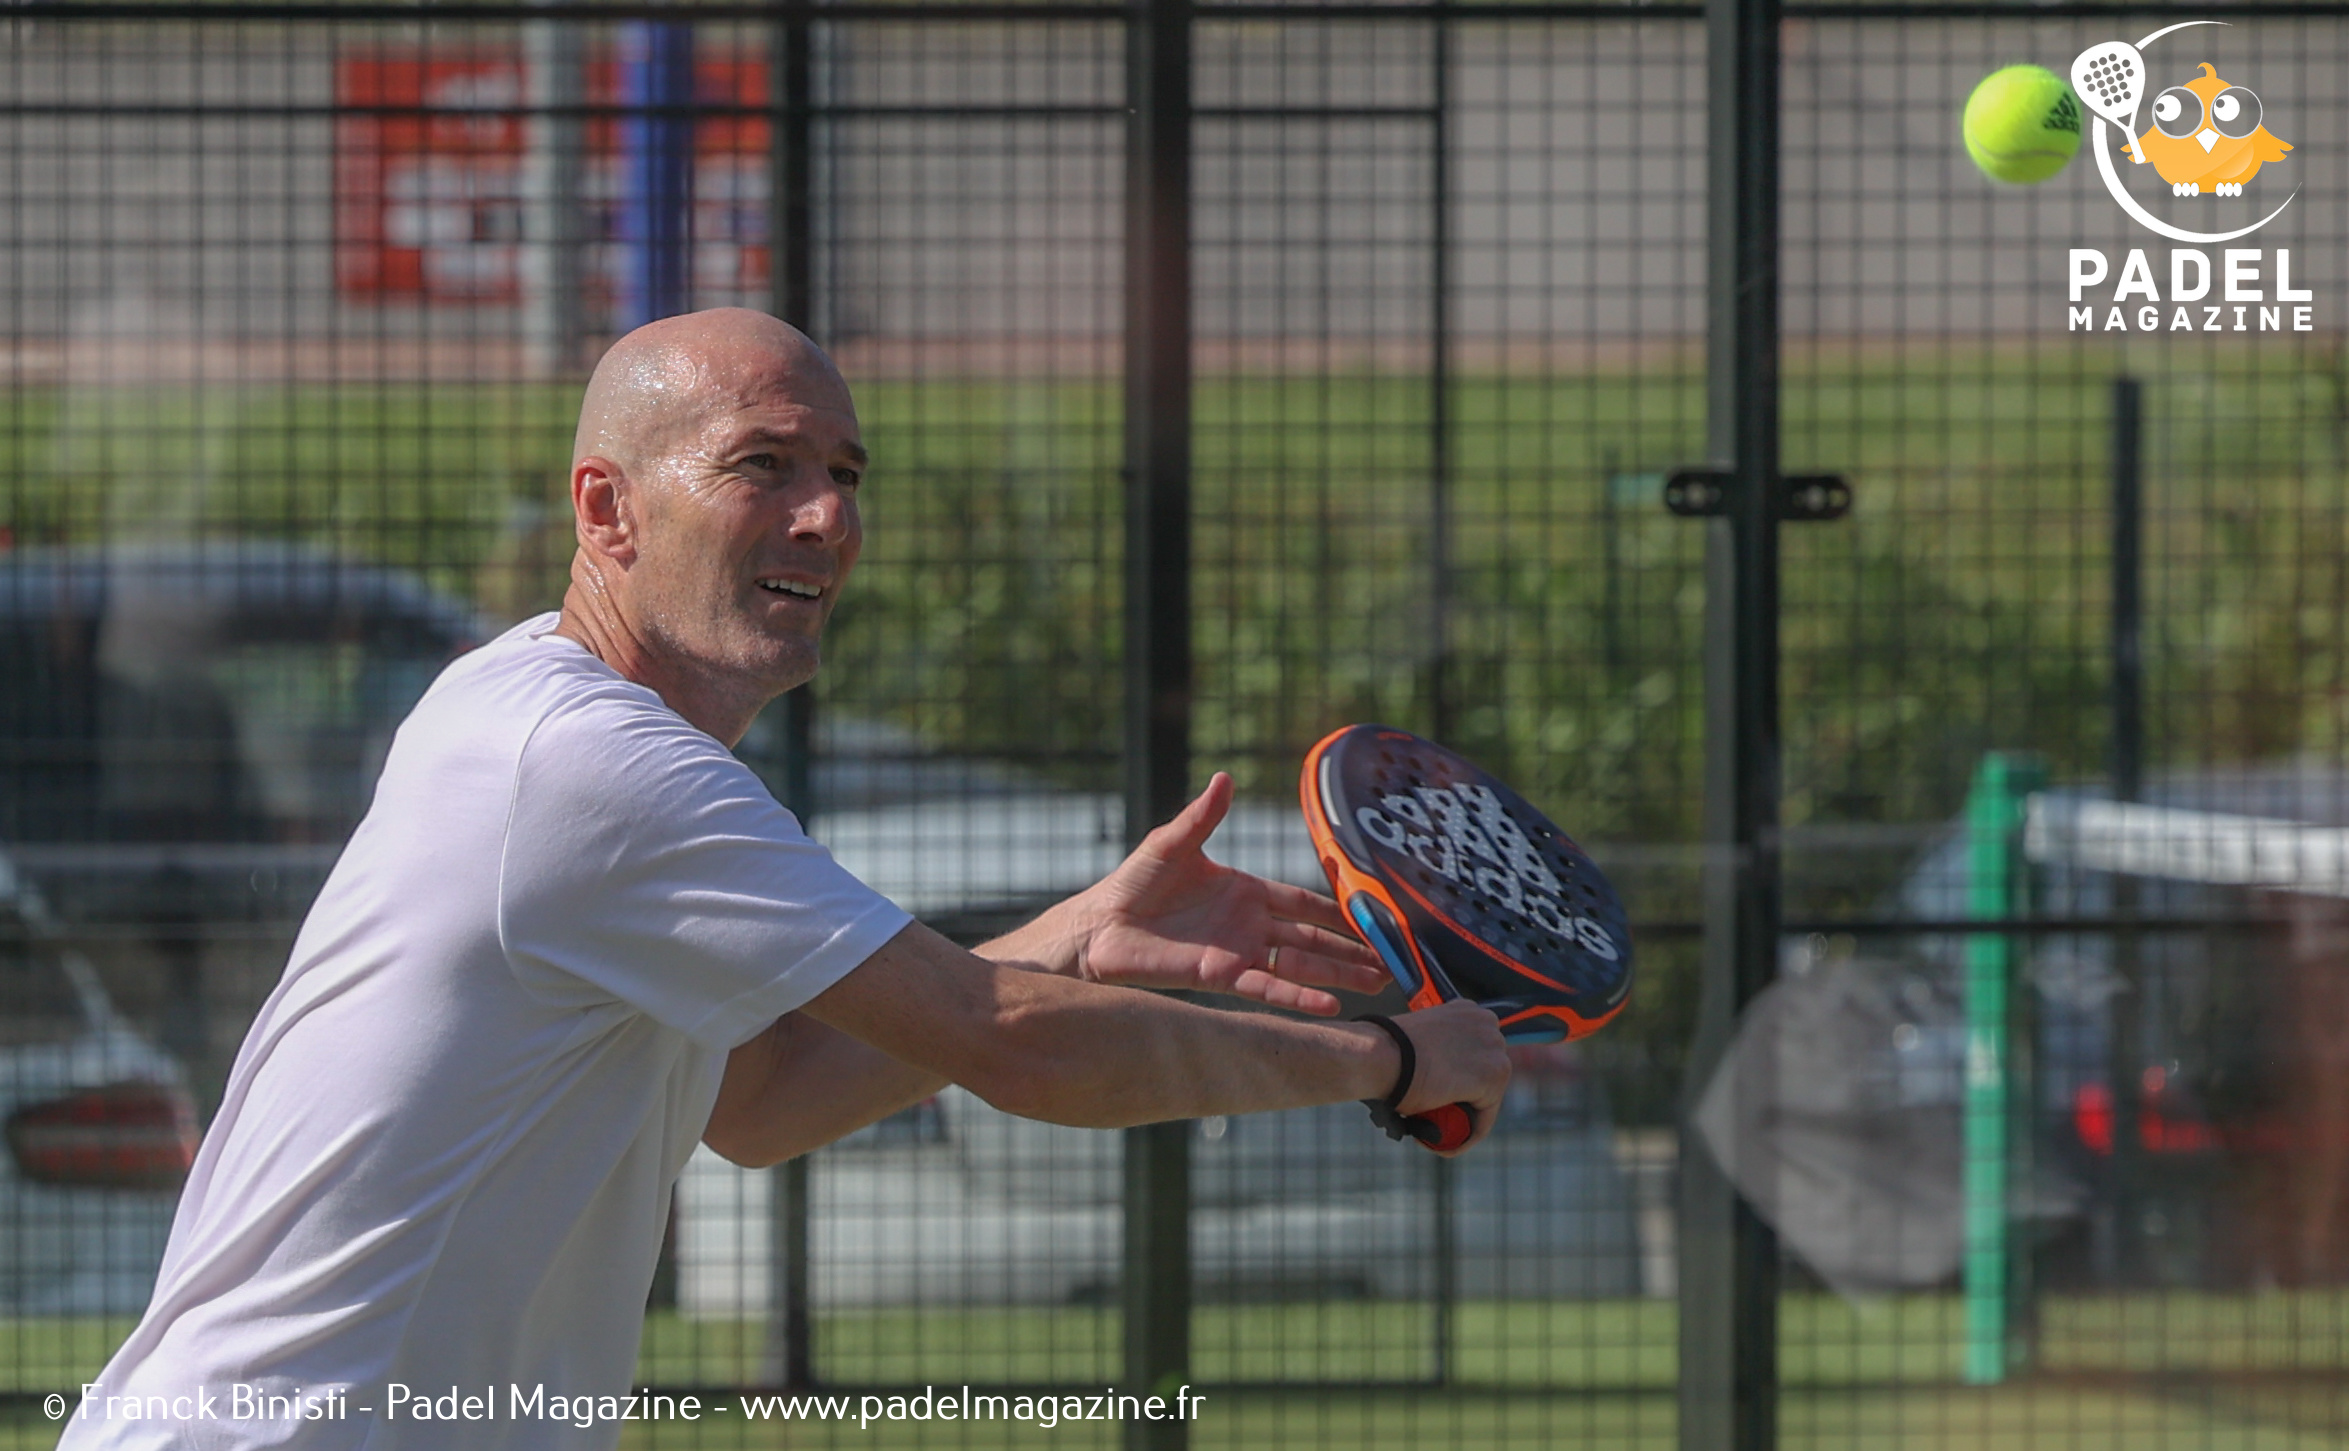 Zidane: “El padel s'està desenvolupant a gran velocitat a França"